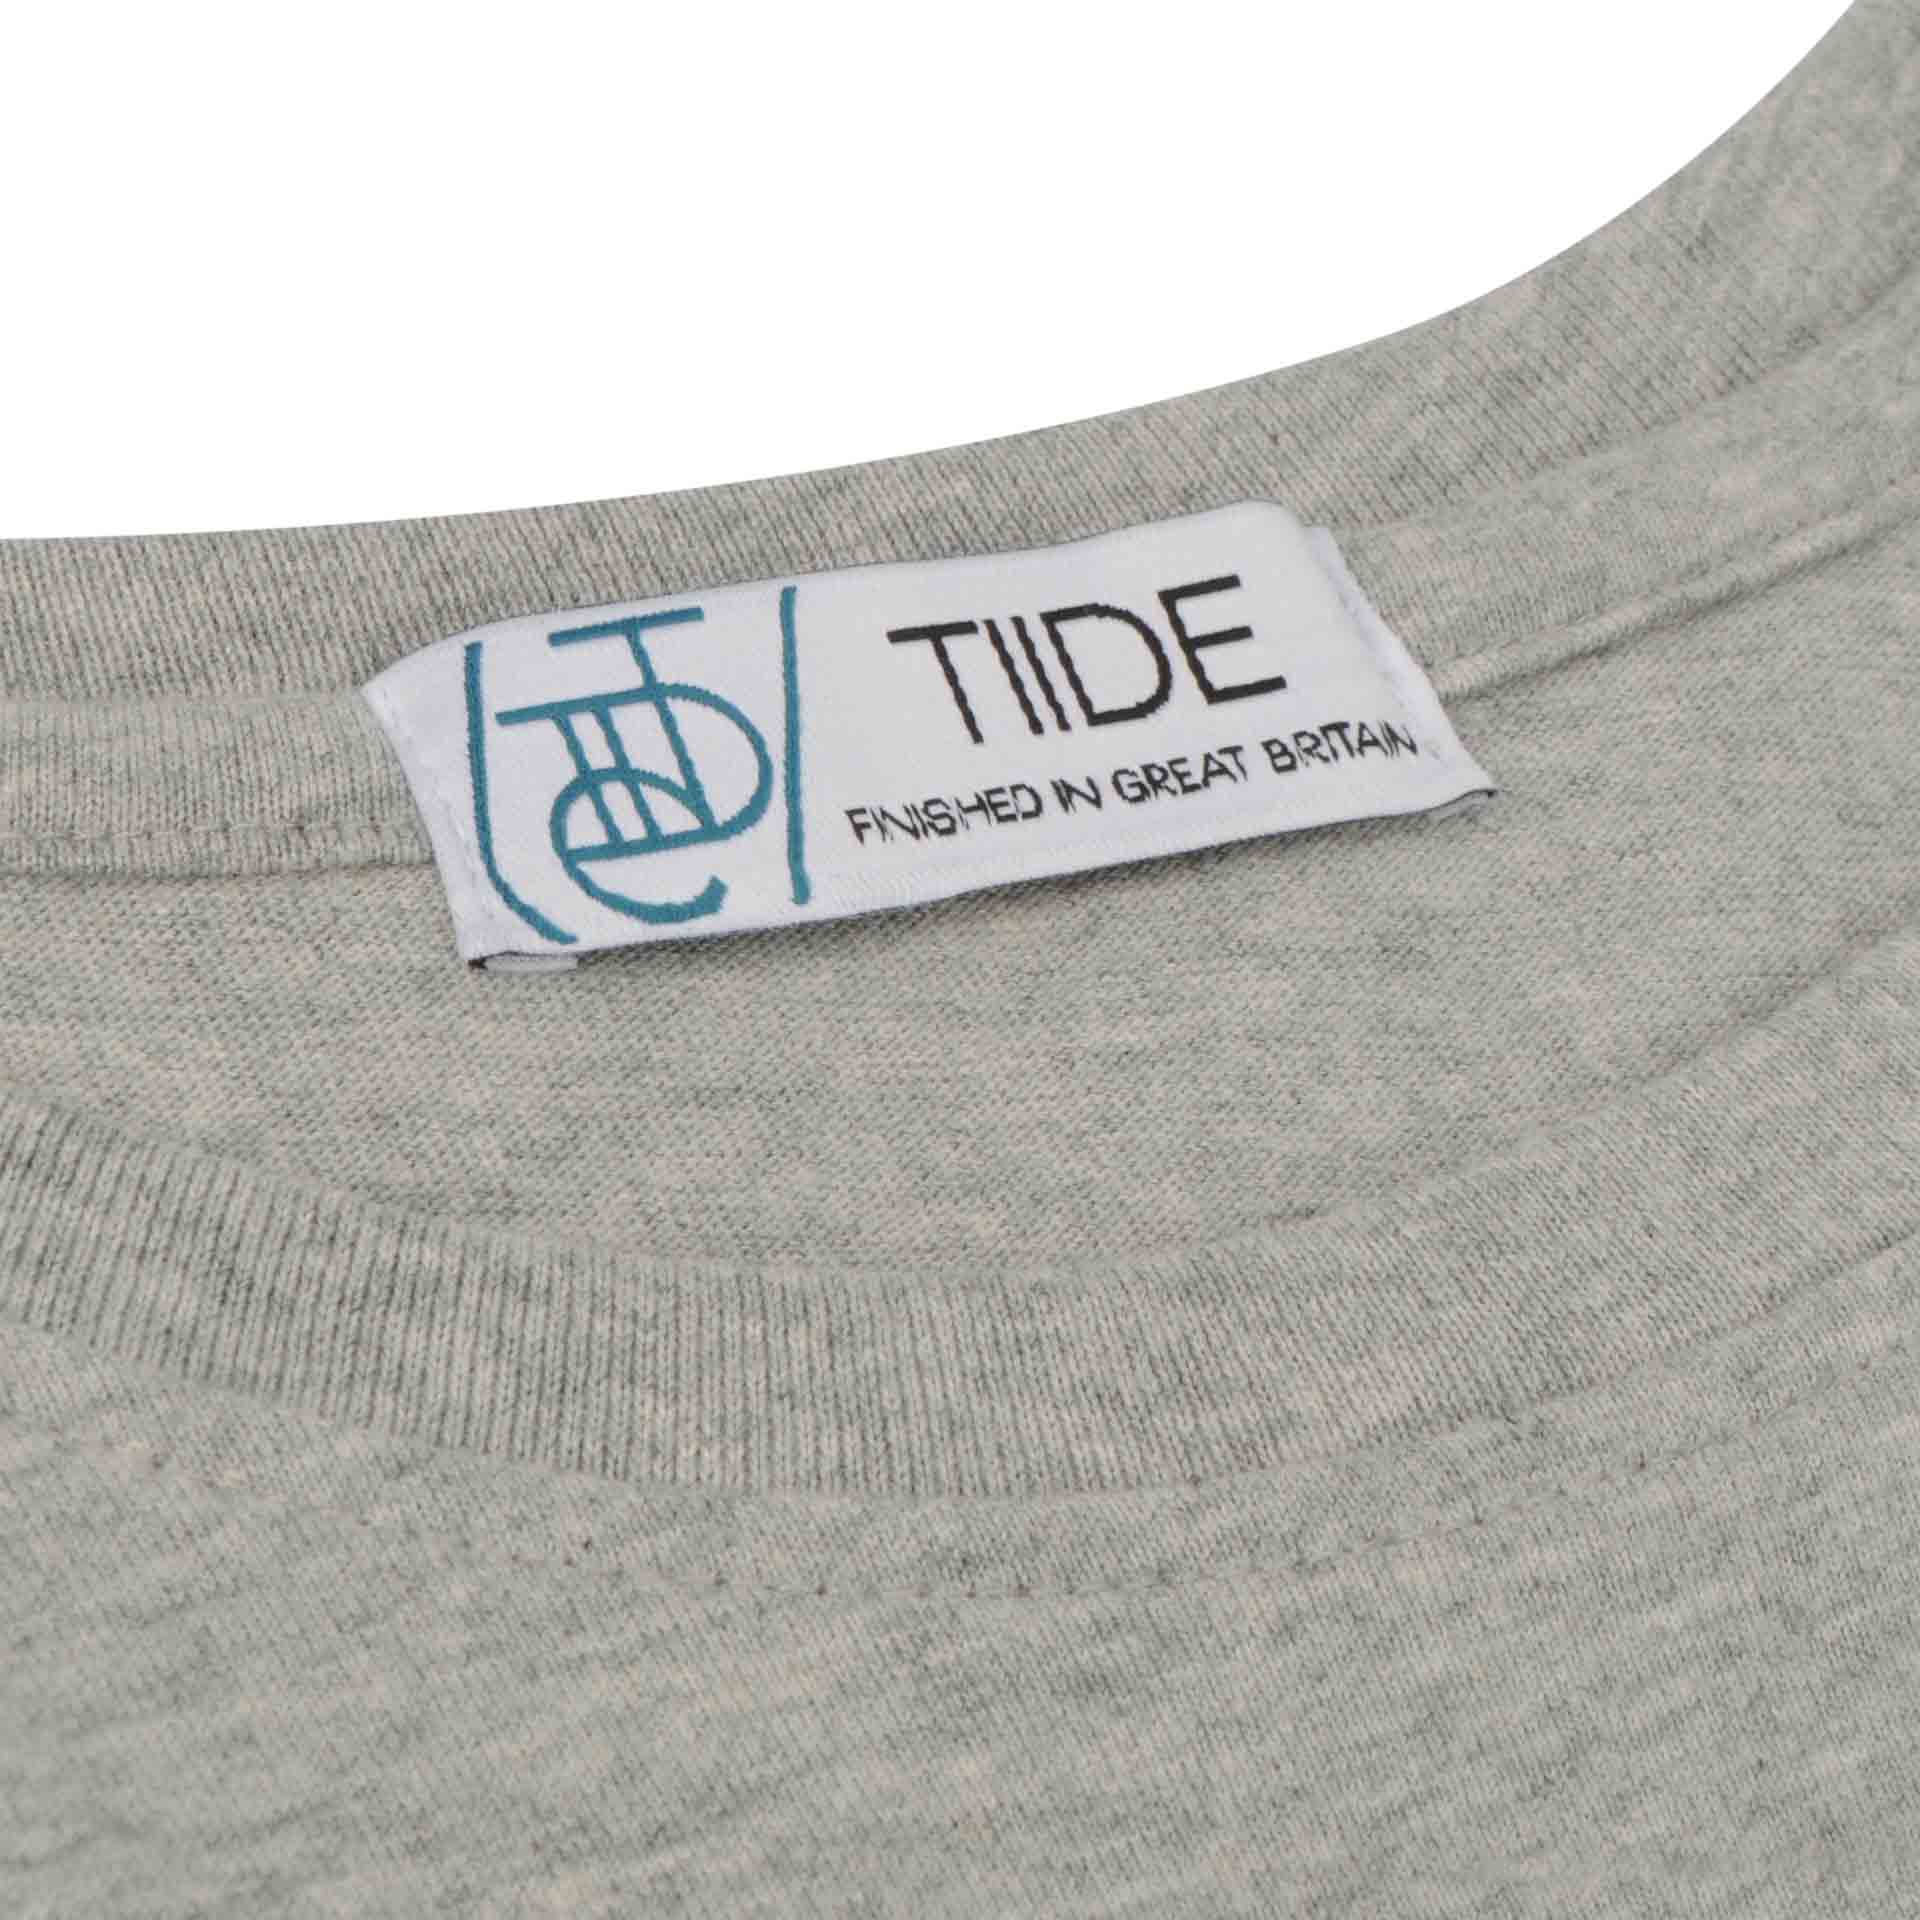 Tiide Tokyo 2020 T-Shirt Grey